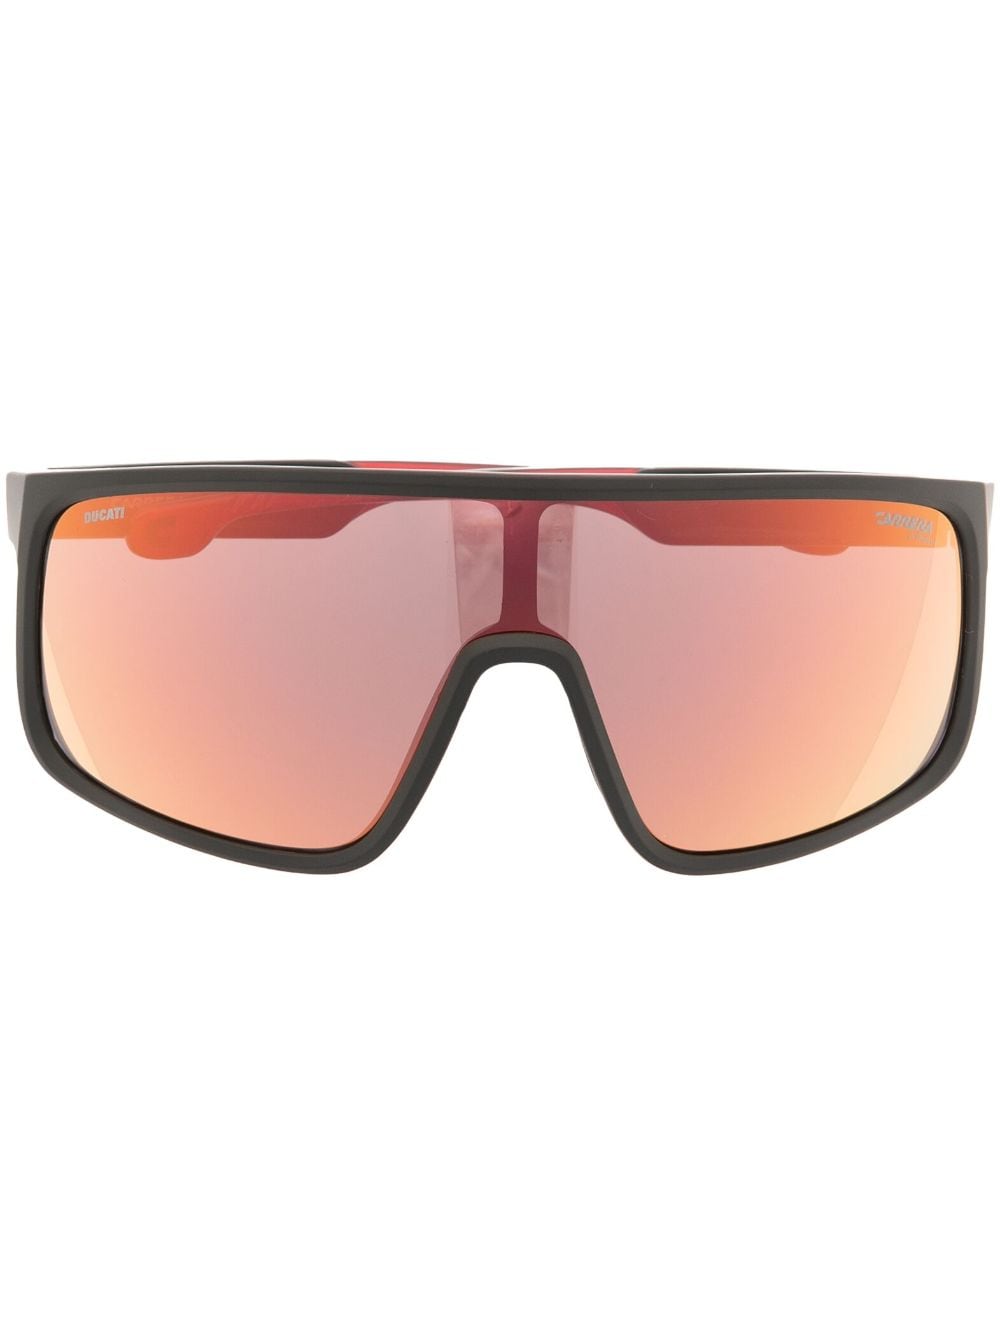 oversized-frame sunglasses